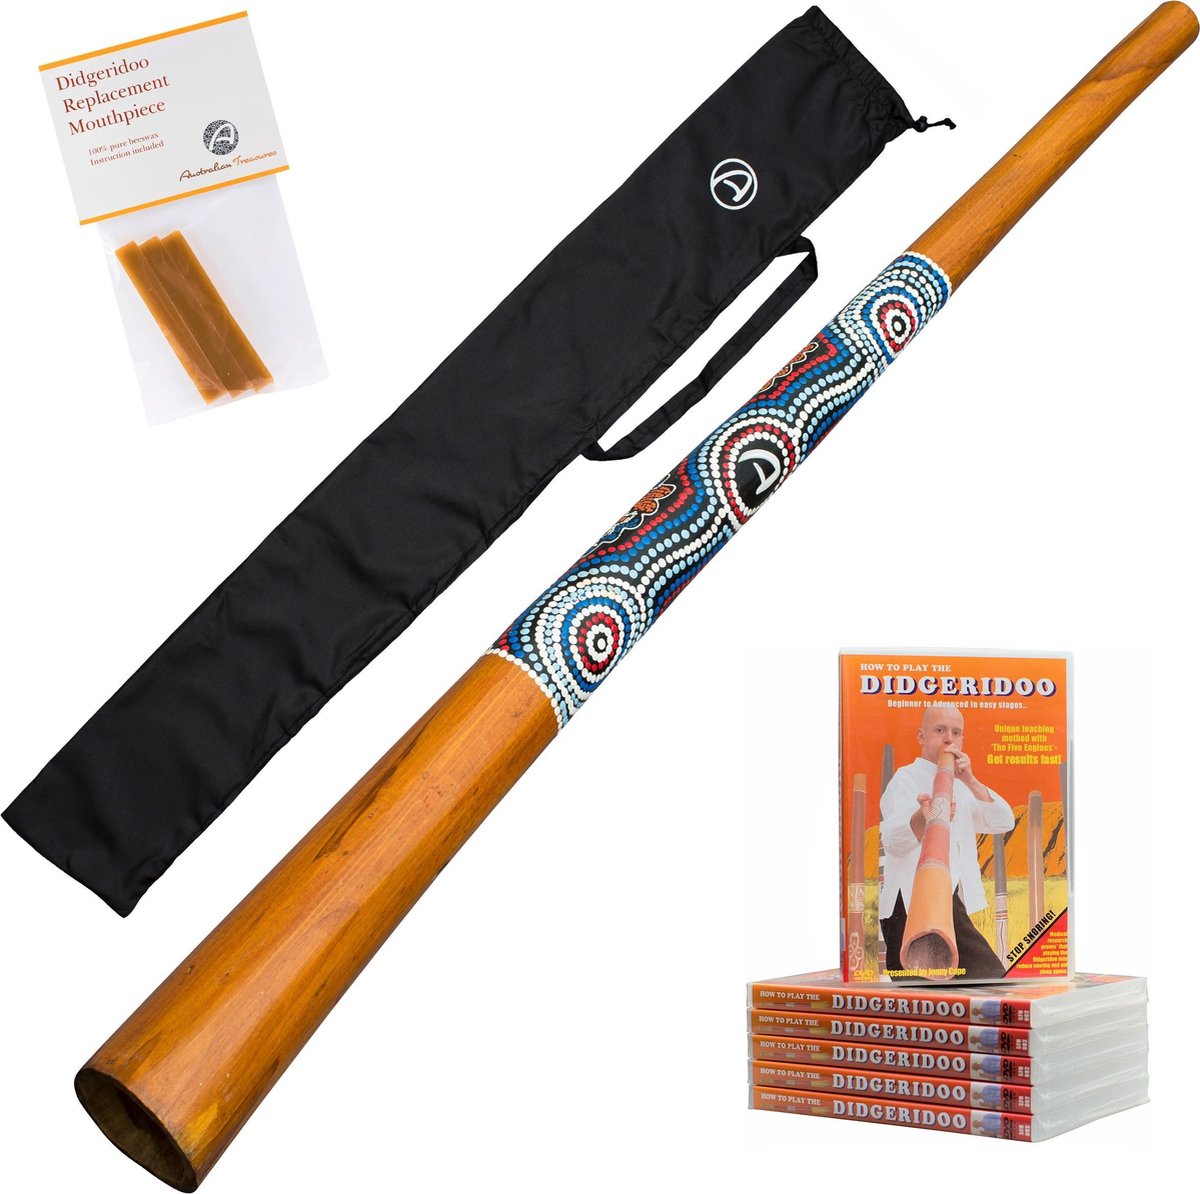 Didgeridoo hout inclusief instructieDVD, bag en bijenwas | bekijk de video!